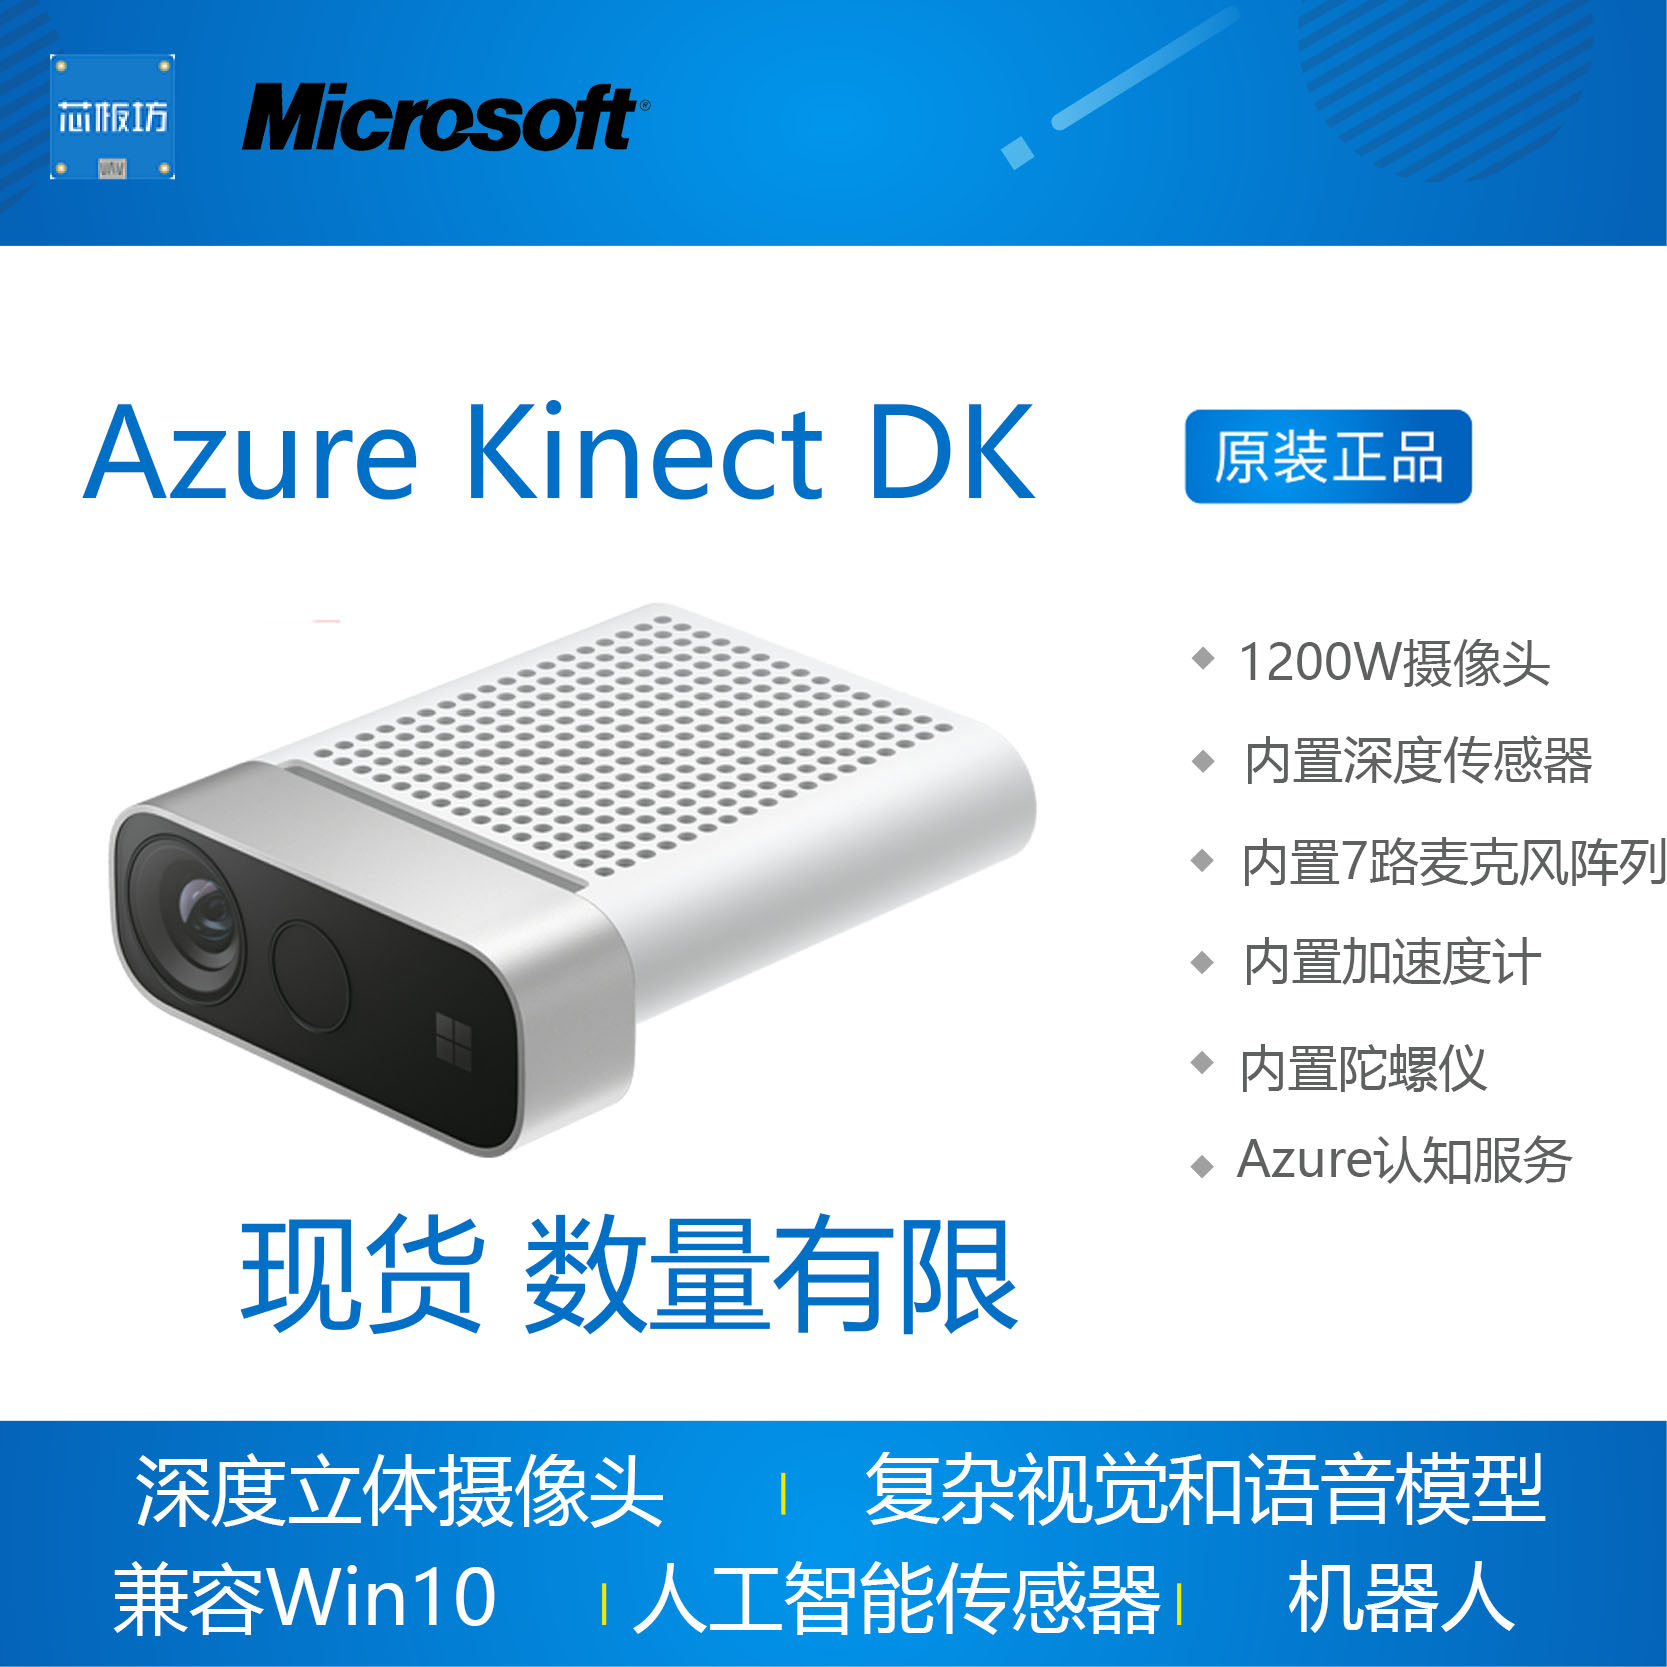 现货 数量有限 Azure Kinect DK 深度摄像头 智能立体相机